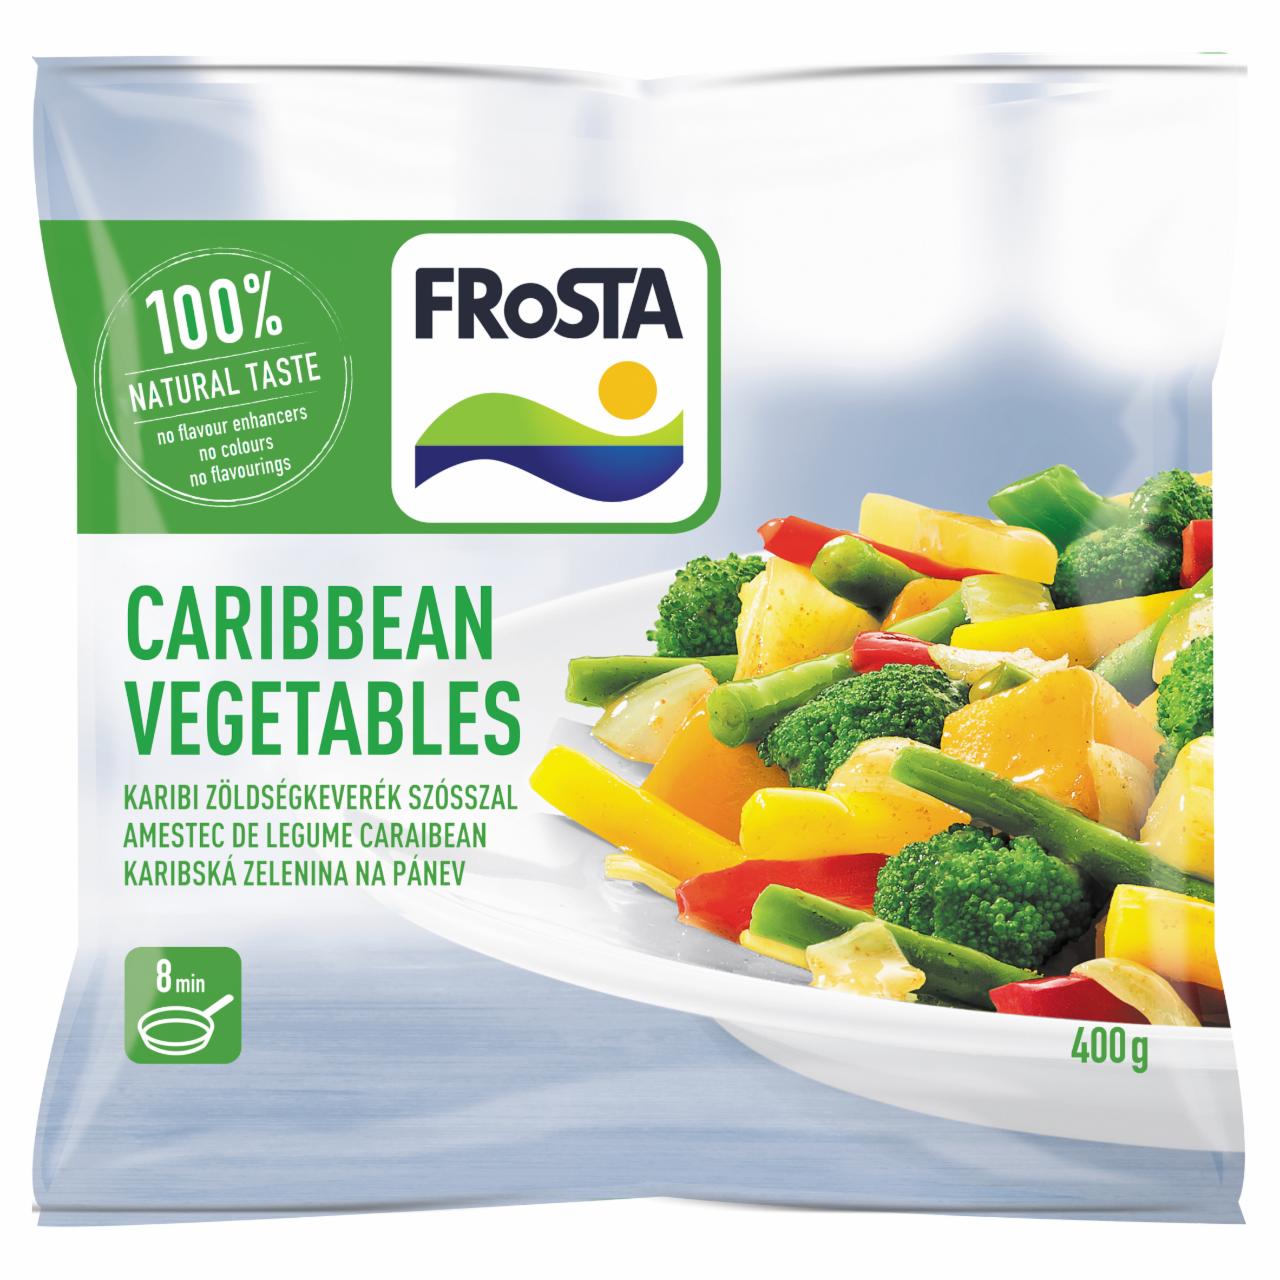 Képek - FRoSTA gyorsfagyasztott karibi zöldségkeverék szósszal 400 g